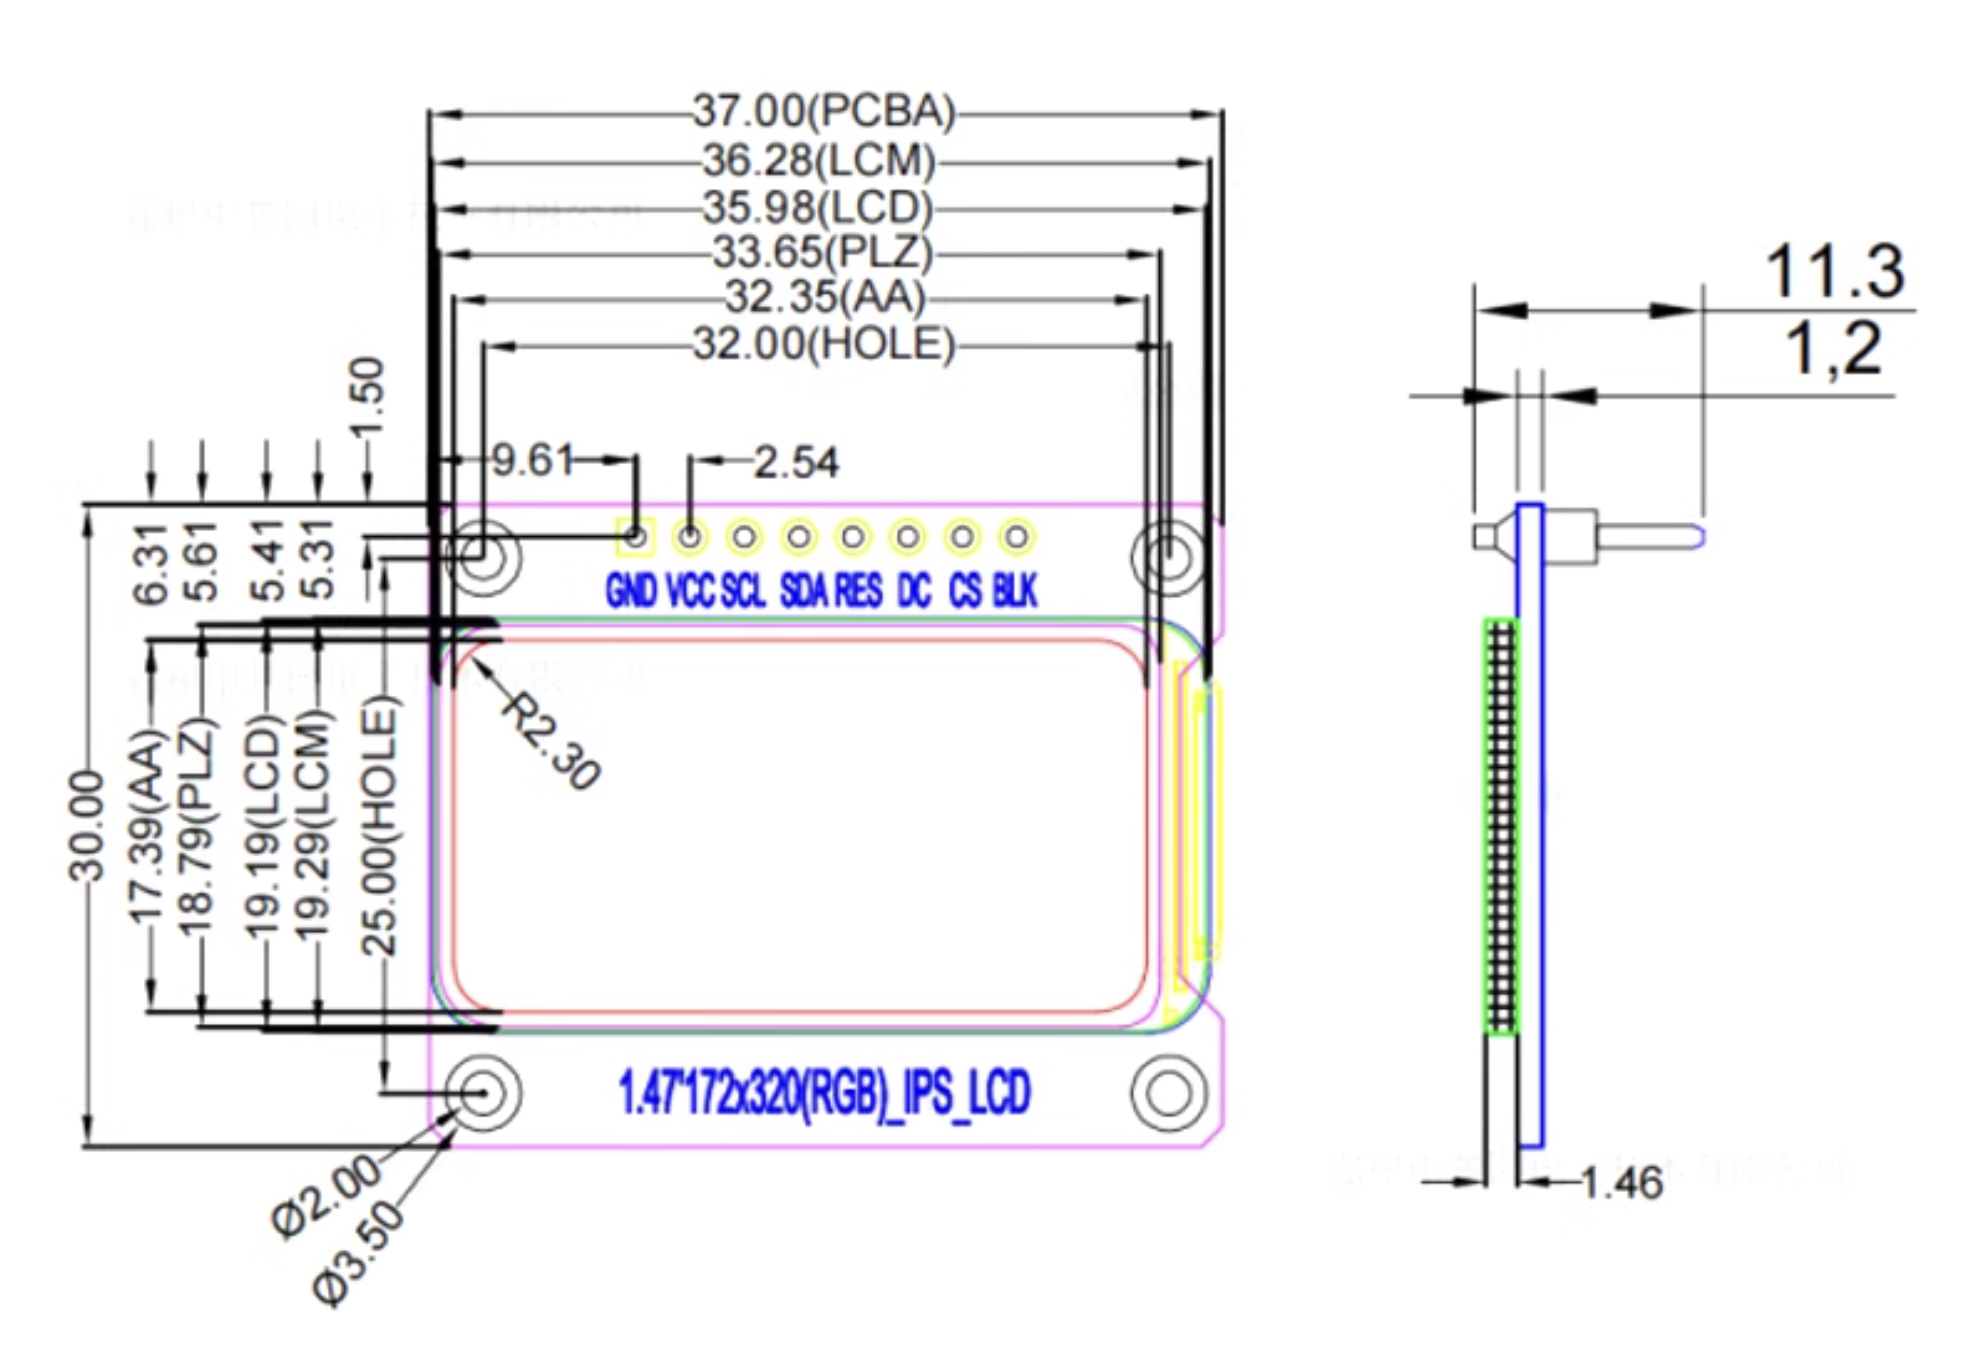 Màn hình LCD TFT IPS 1.47 Inch Rounded Corners ST7789V3 SPI Interface